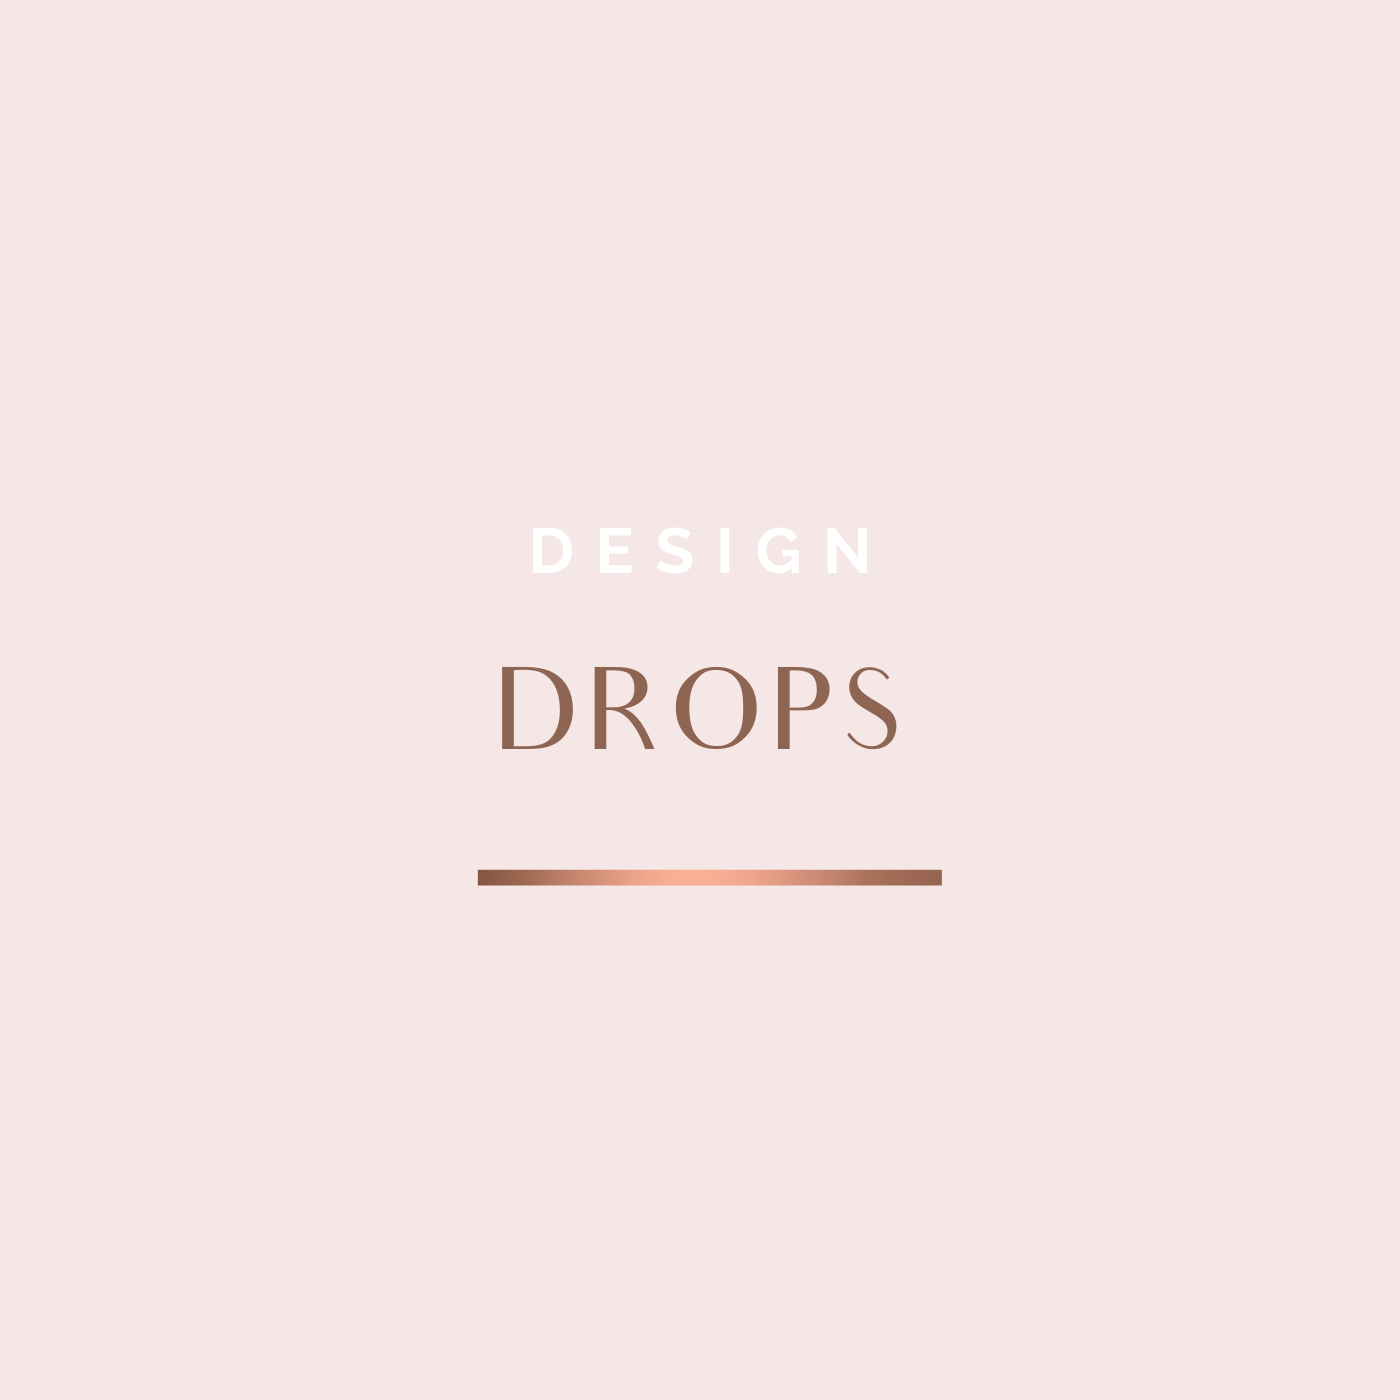 Design Drops